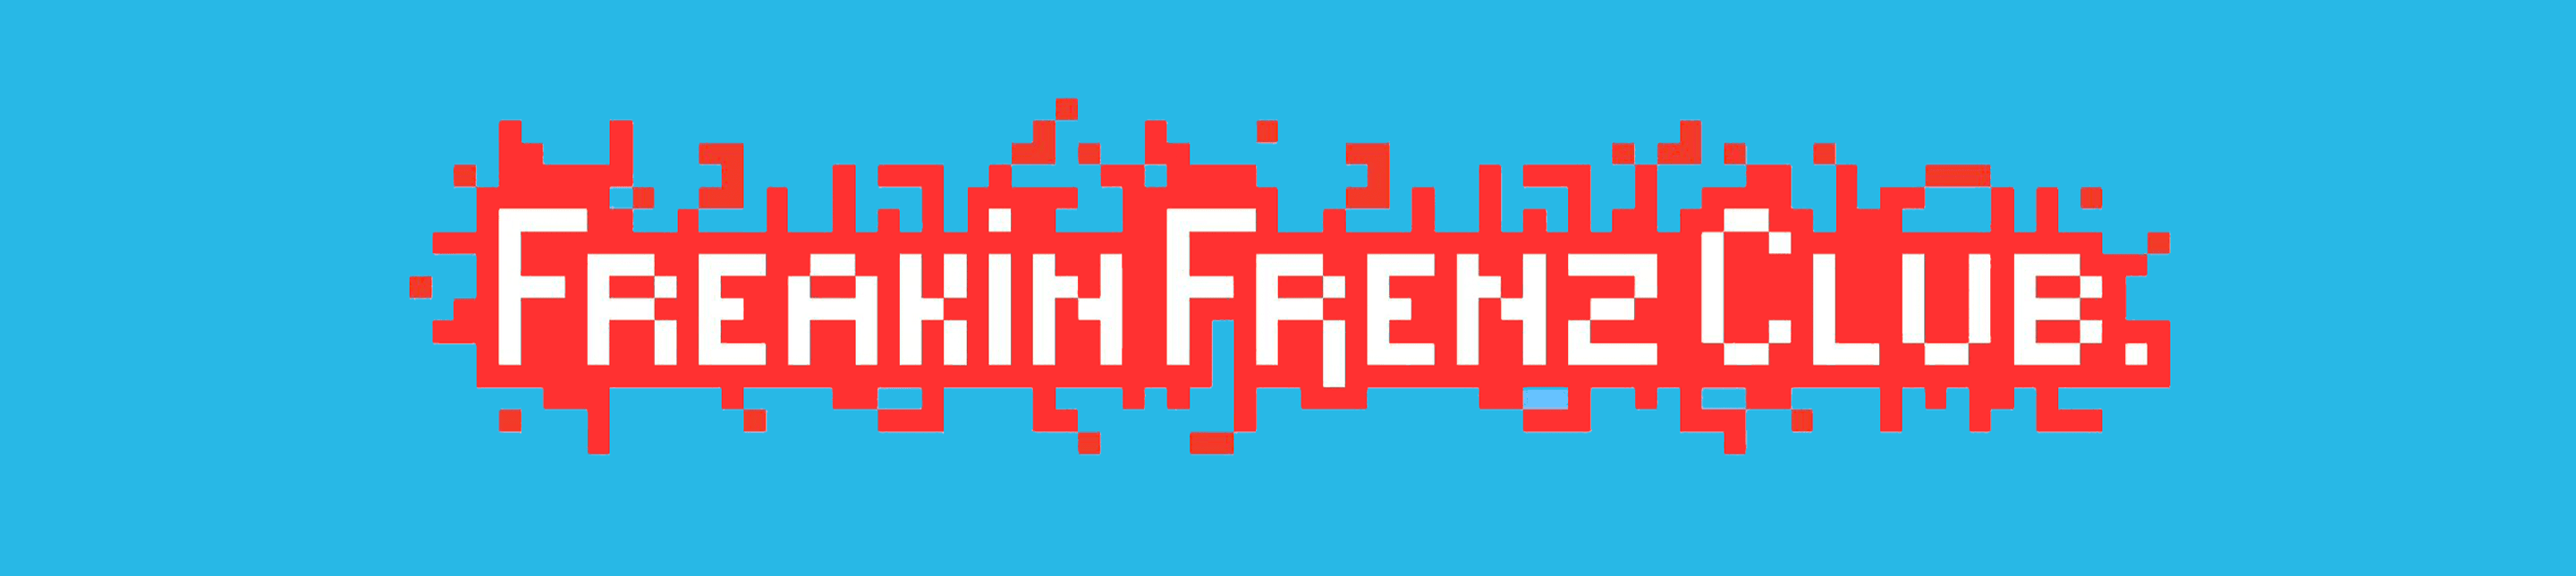 FreakinFrenz banner